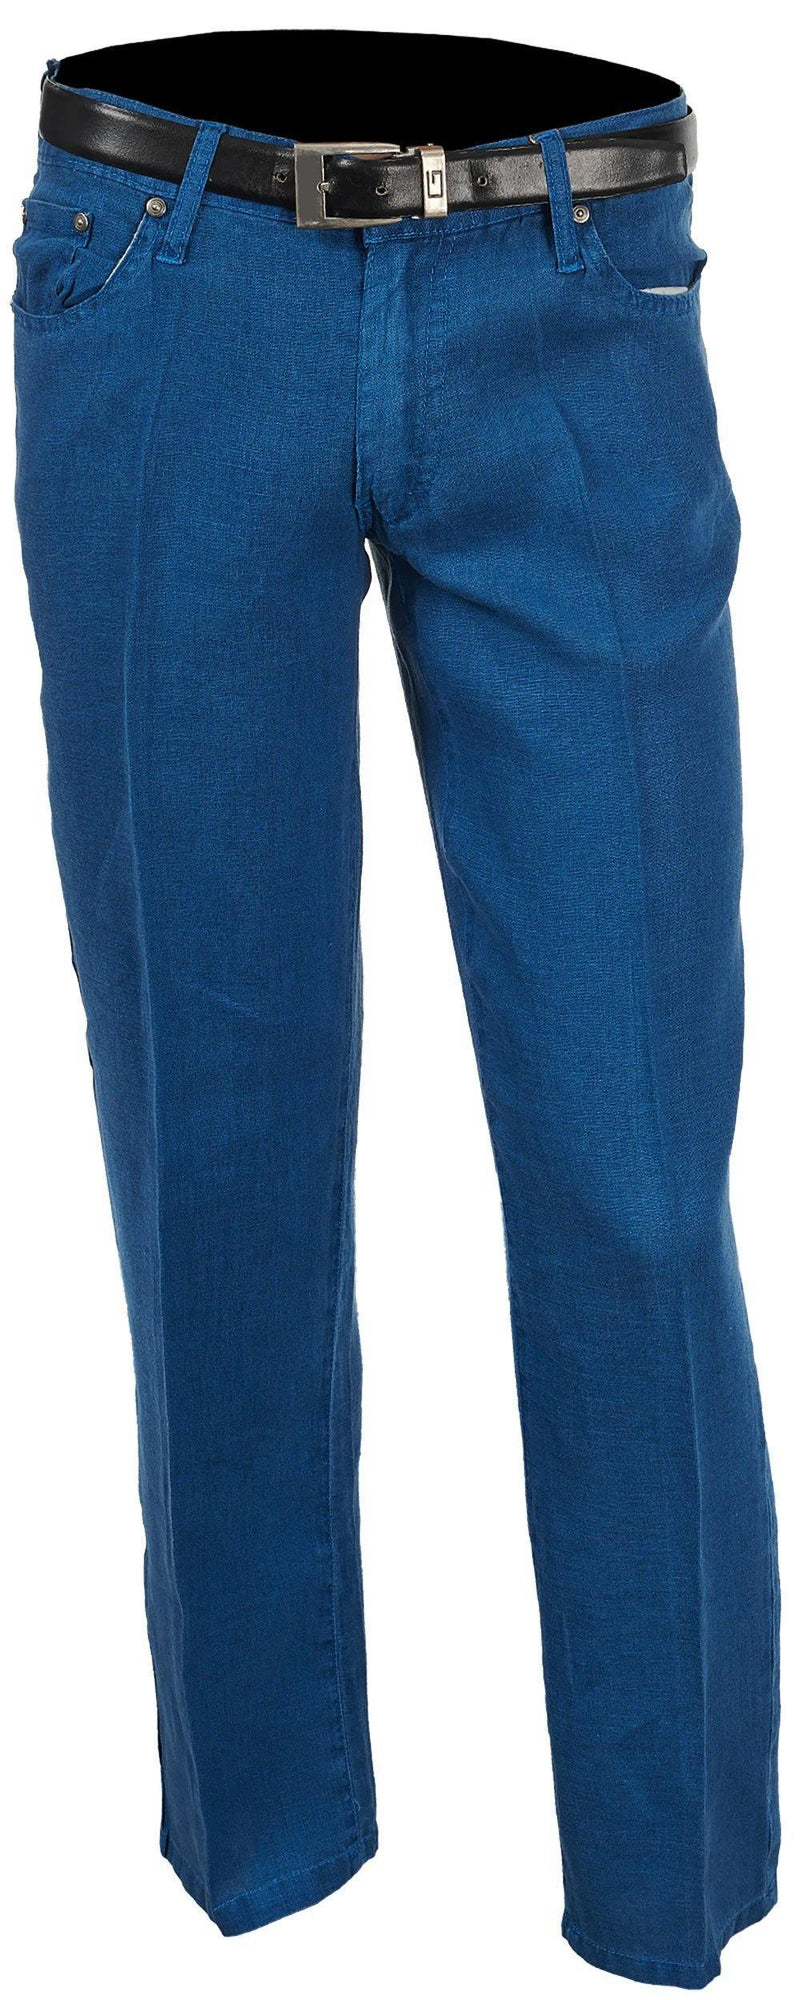 Men's Linen Slim Fit Jeans color Cobalt Blue - Upscale Men's Fashion